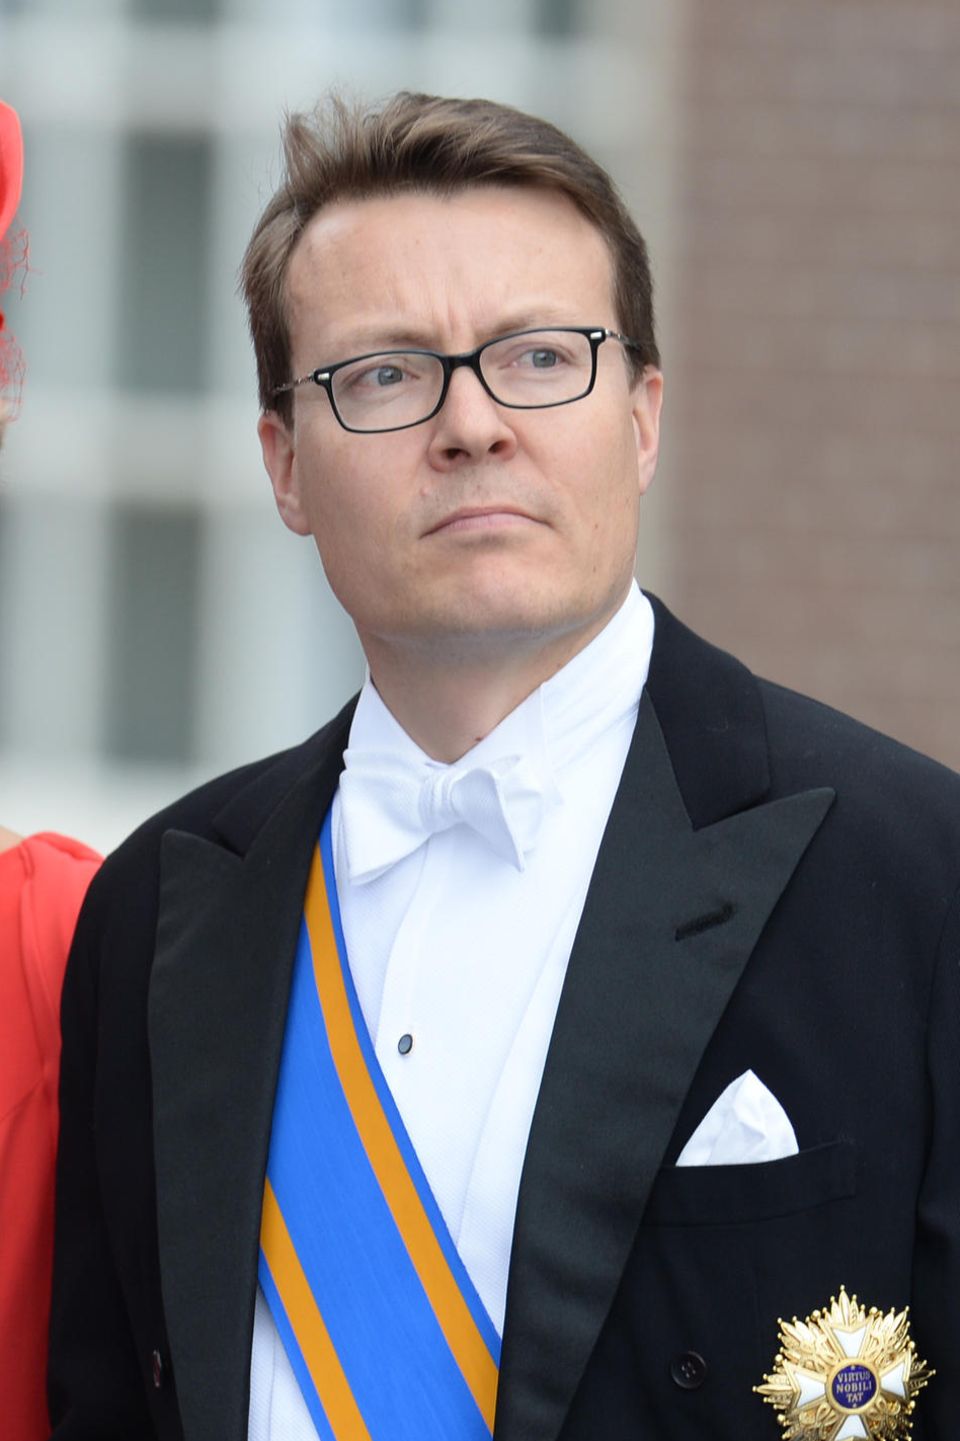 Prinz Constantijn, eigentlich Constantijn Christof Frederik Aschwin, Prinz der Niederlande, Prinz von Oranien-Nassau, Jonkheer von Amsberg (*1969)